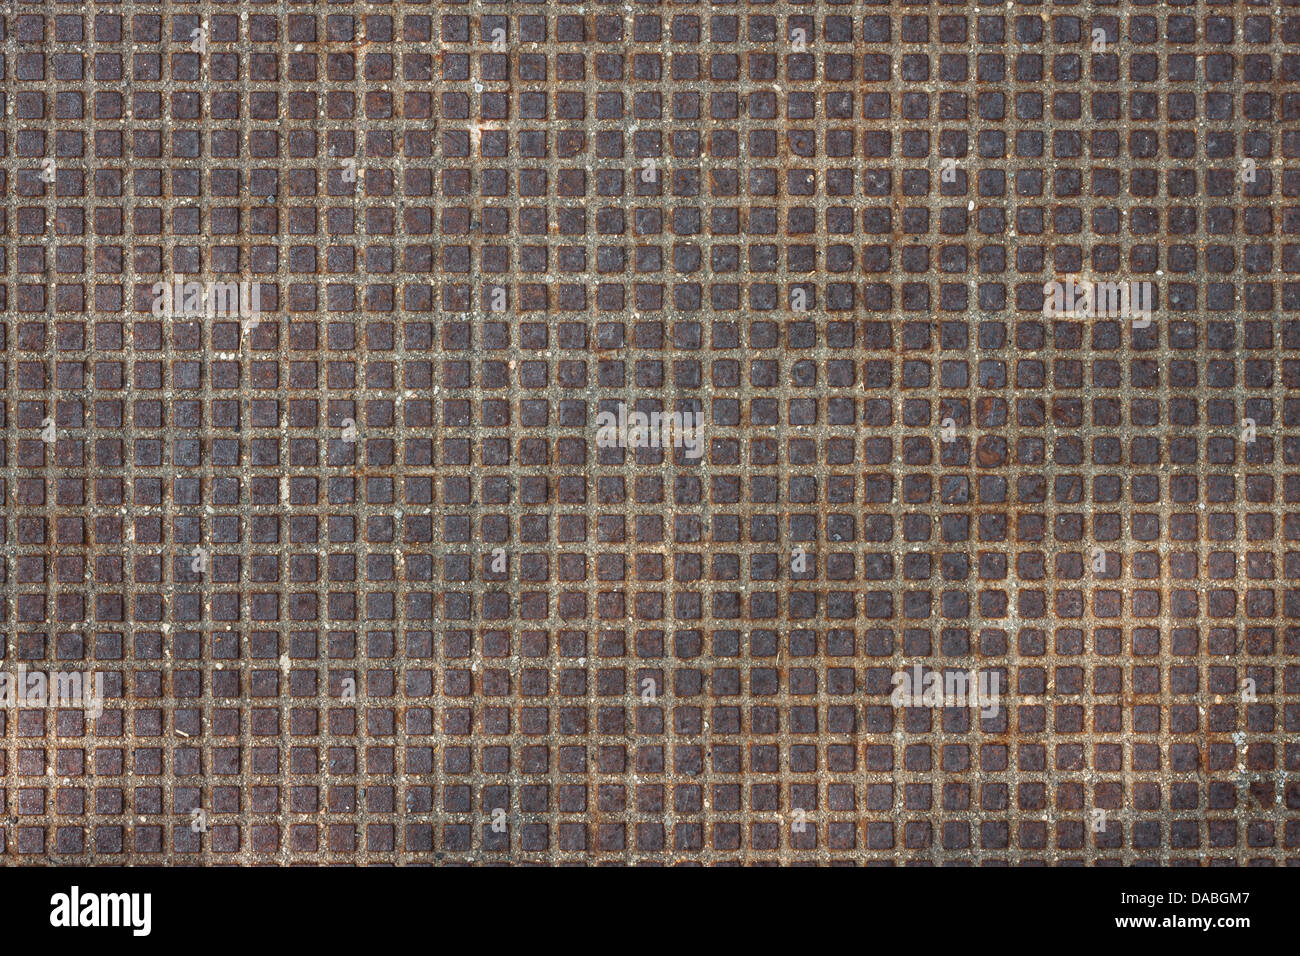 Rusty metal texture background avec de petits carrés en relief Banque D'Images